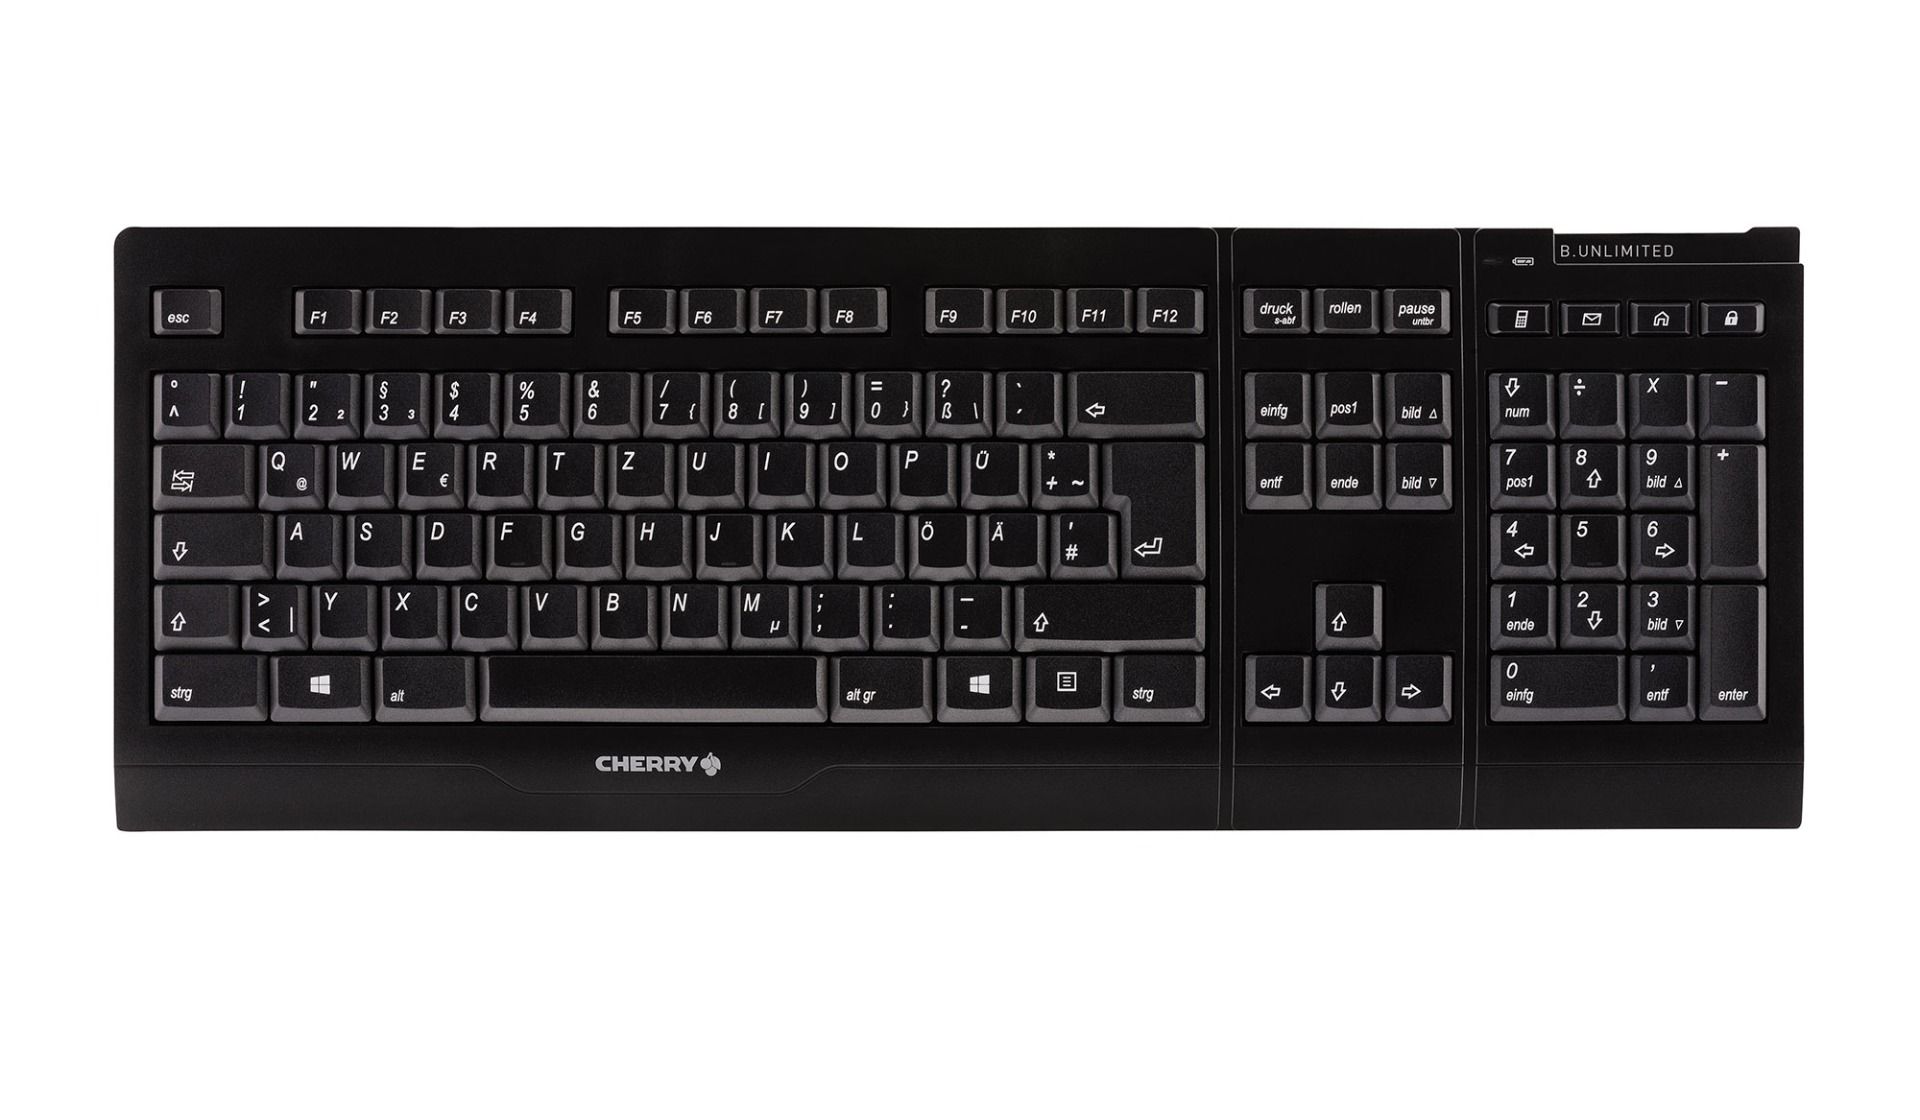 Cherry JD-0410DE-2 B.Unlimited 3.0 Wireless Desktop Tastatur + Maus, deutsch, schwarz (DEMO)